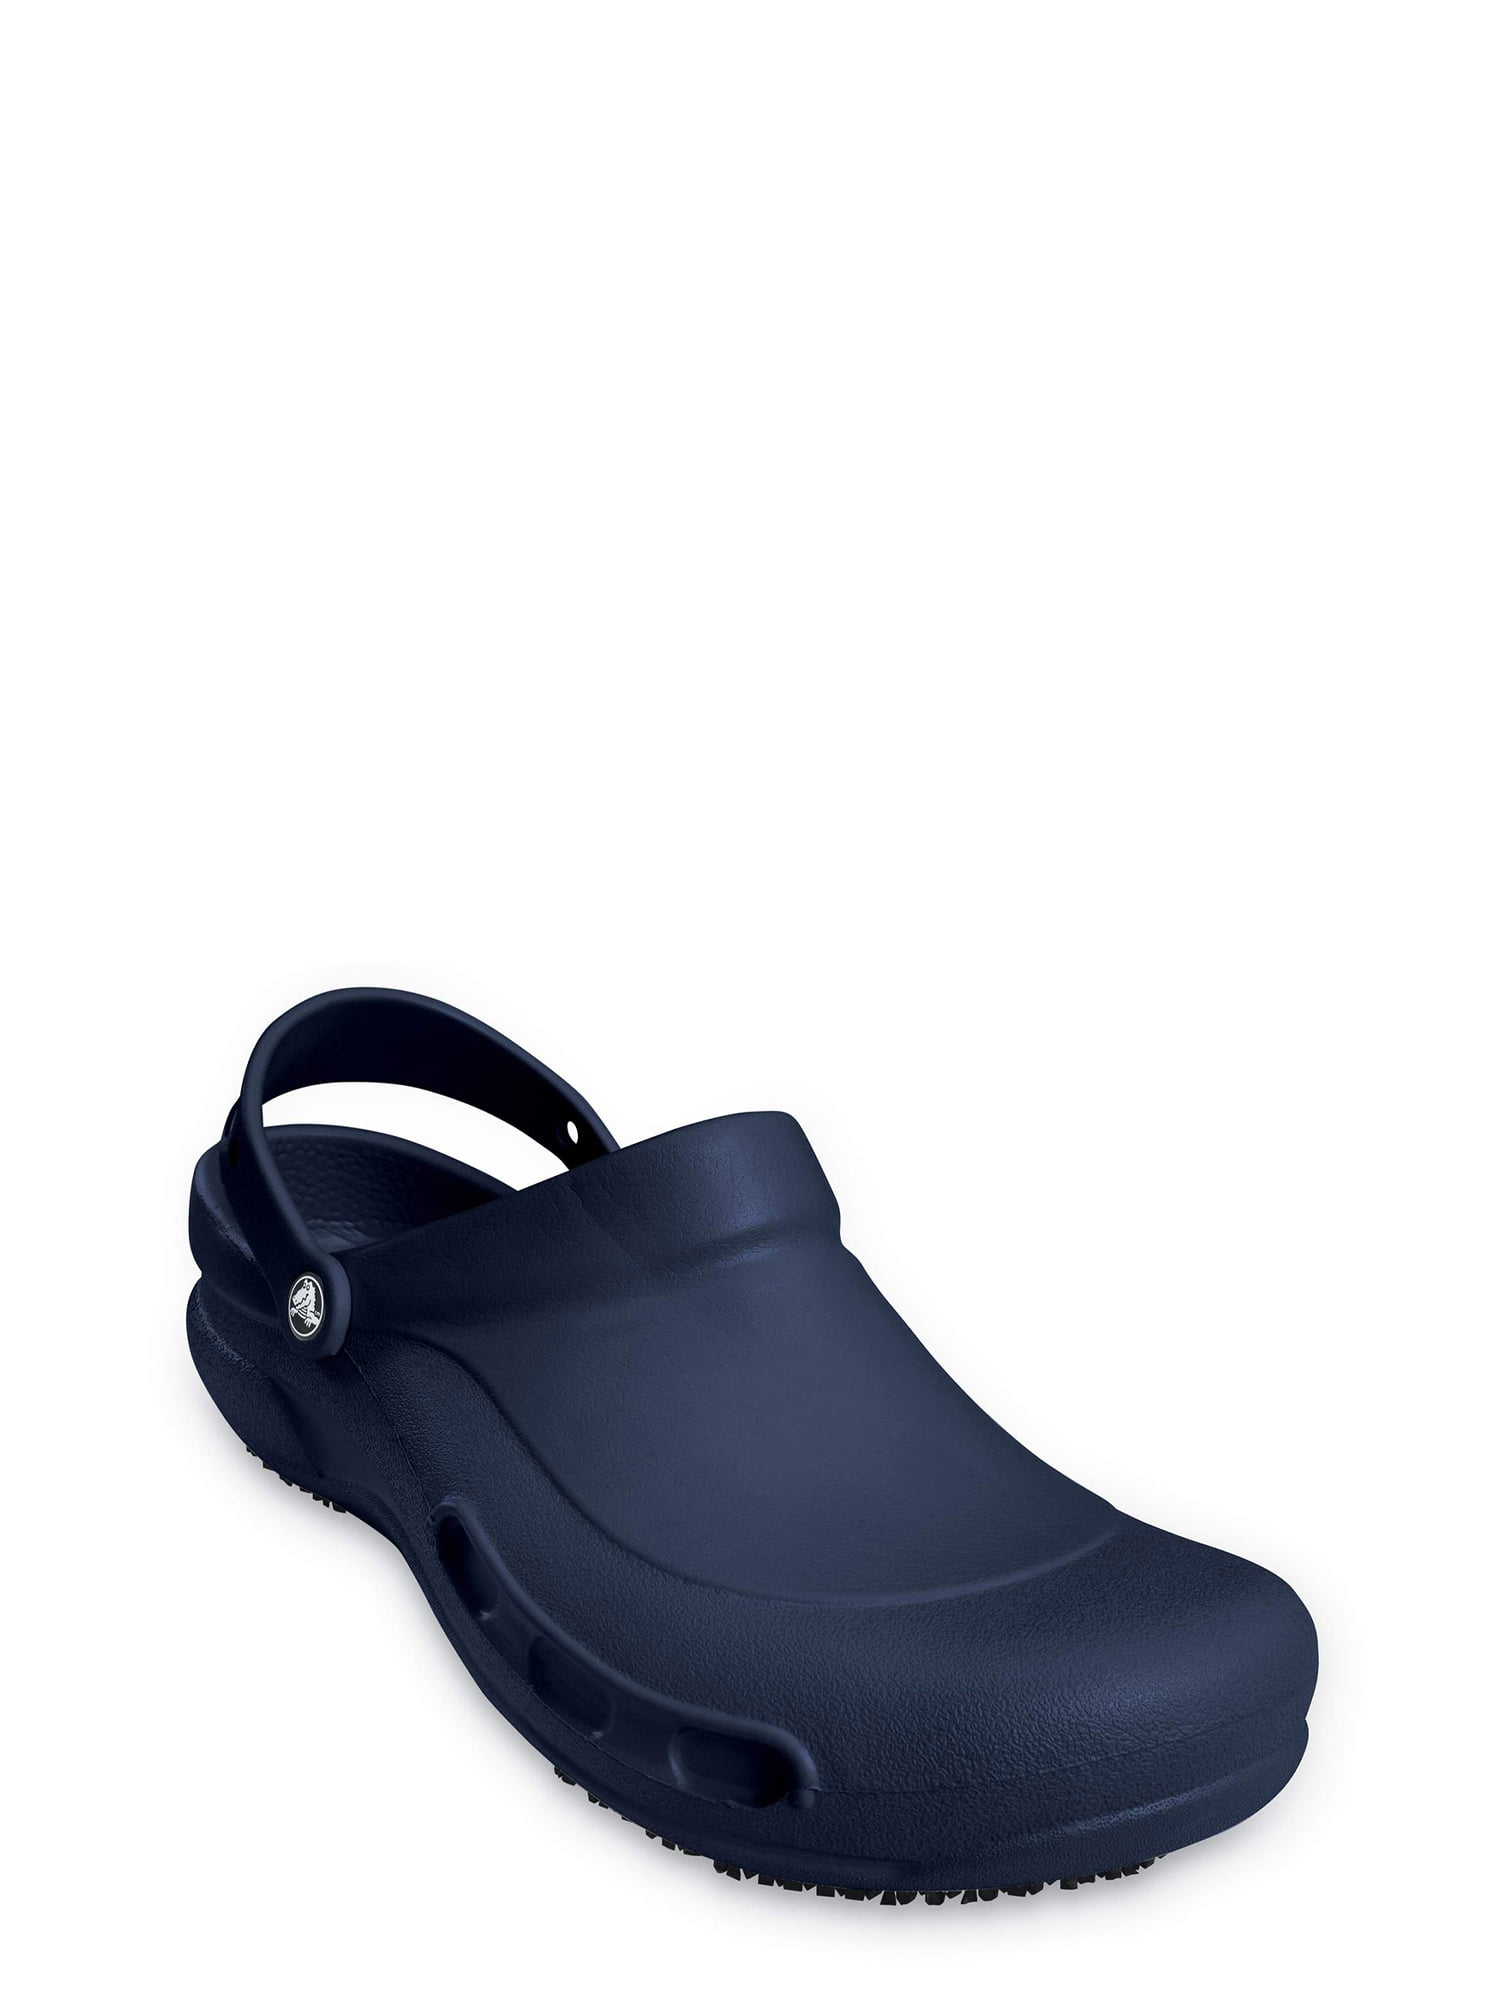 Crocs Men's and Women's Bistro ClogSlip Resistant Comfort On Work Shoe 